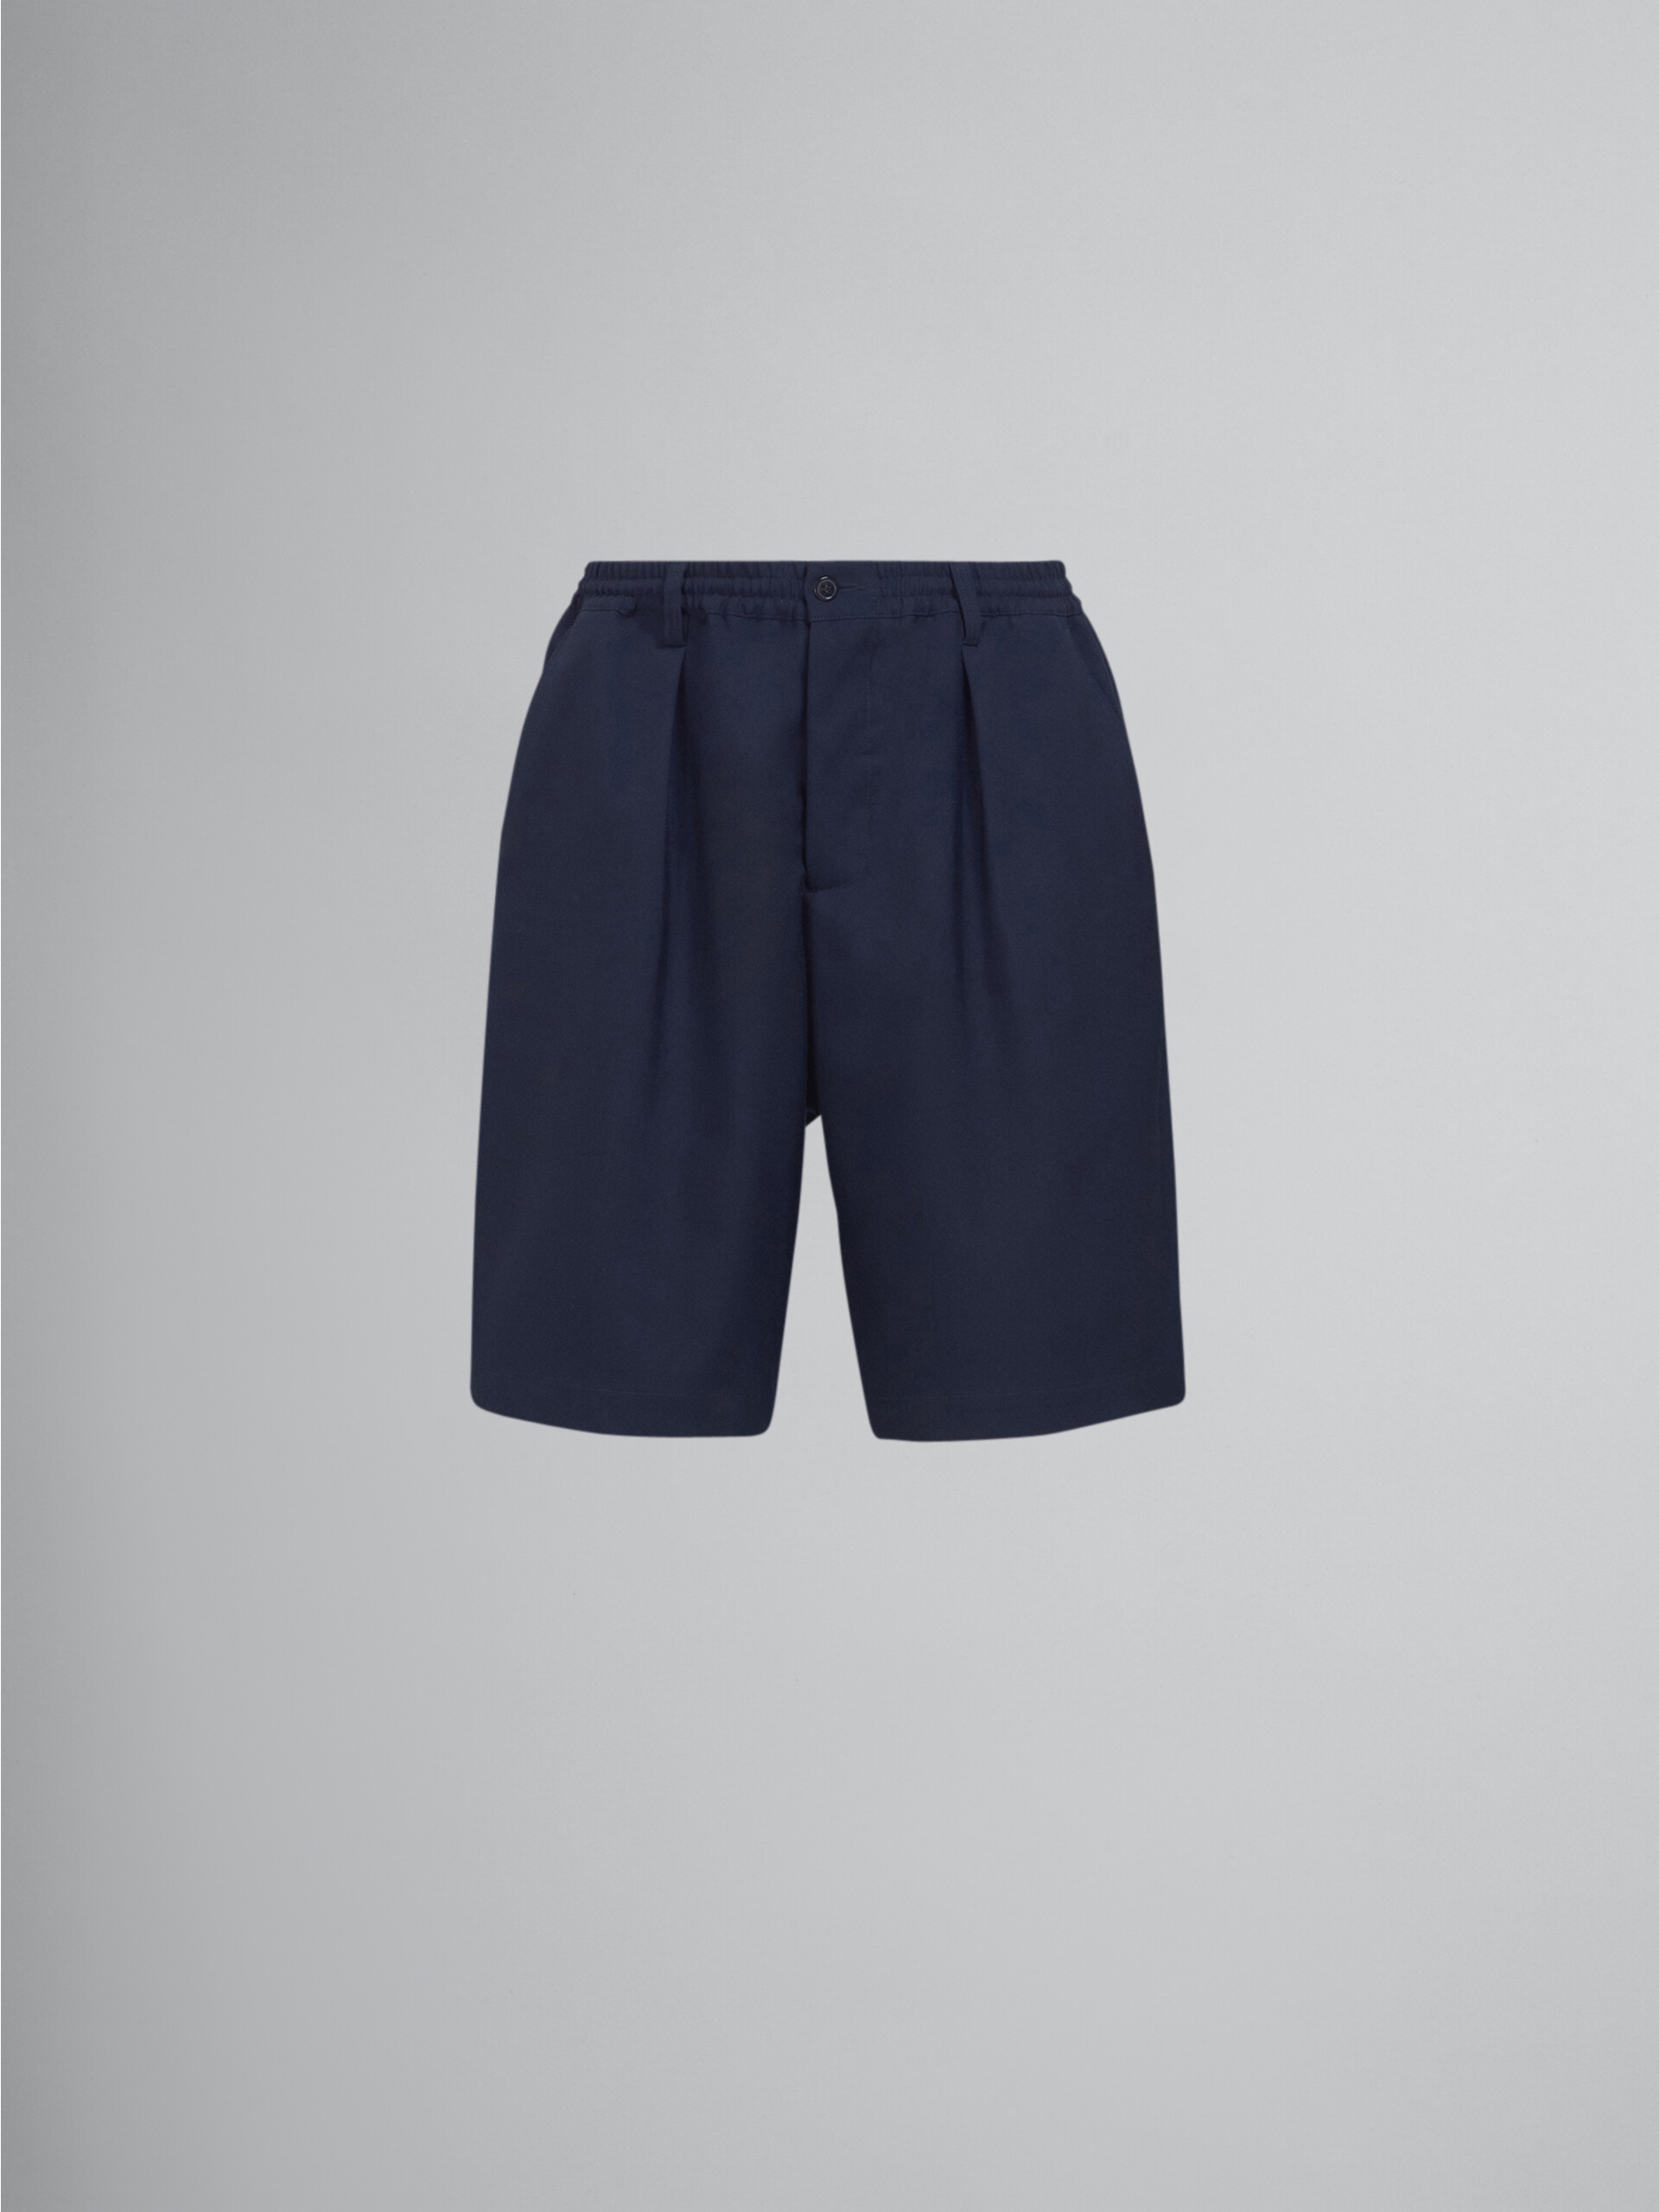 Blue tropical wool Bermuda pants - Pants - Image 1